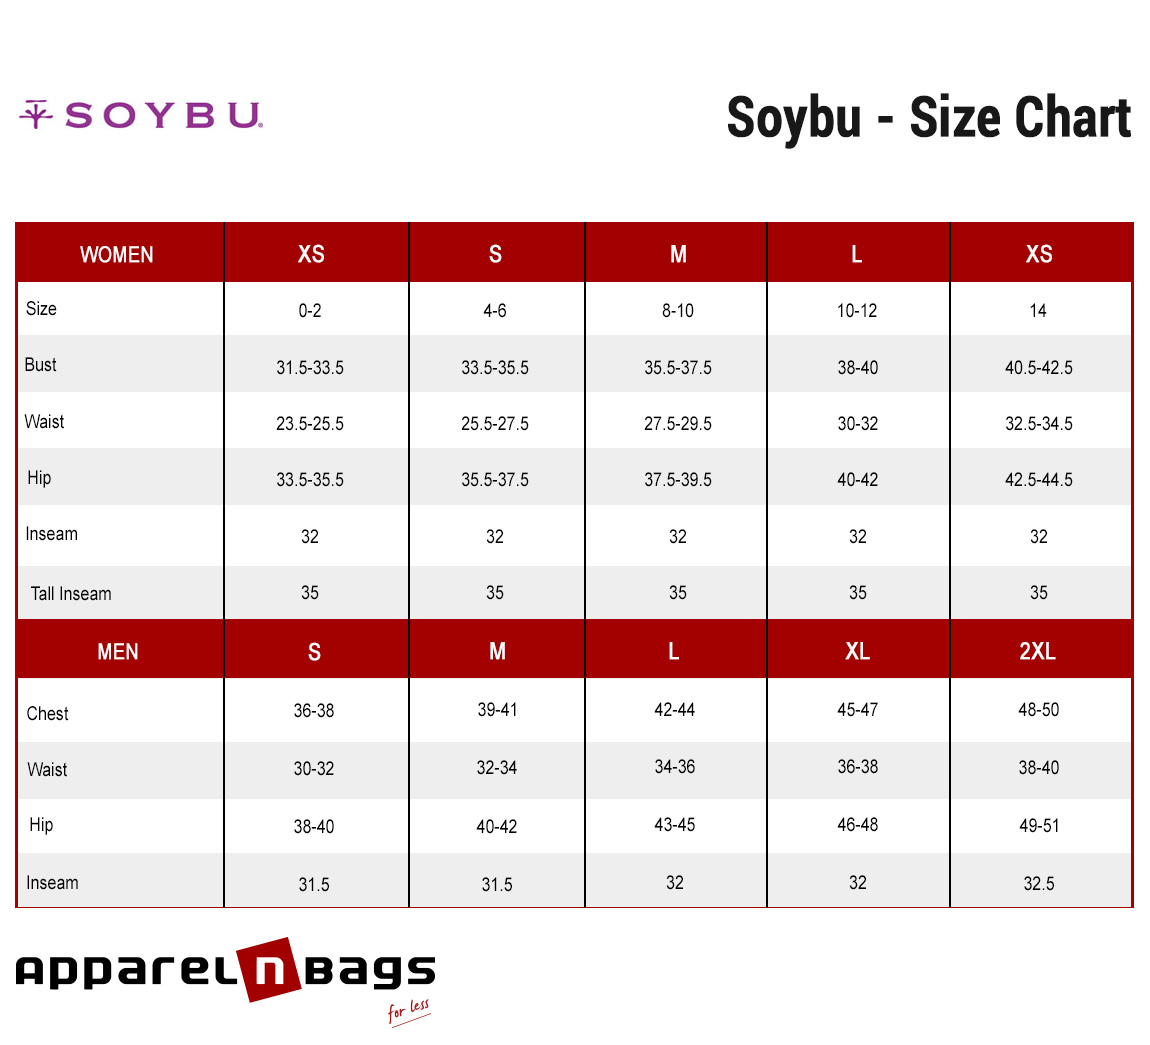 Soybu - Size Chart